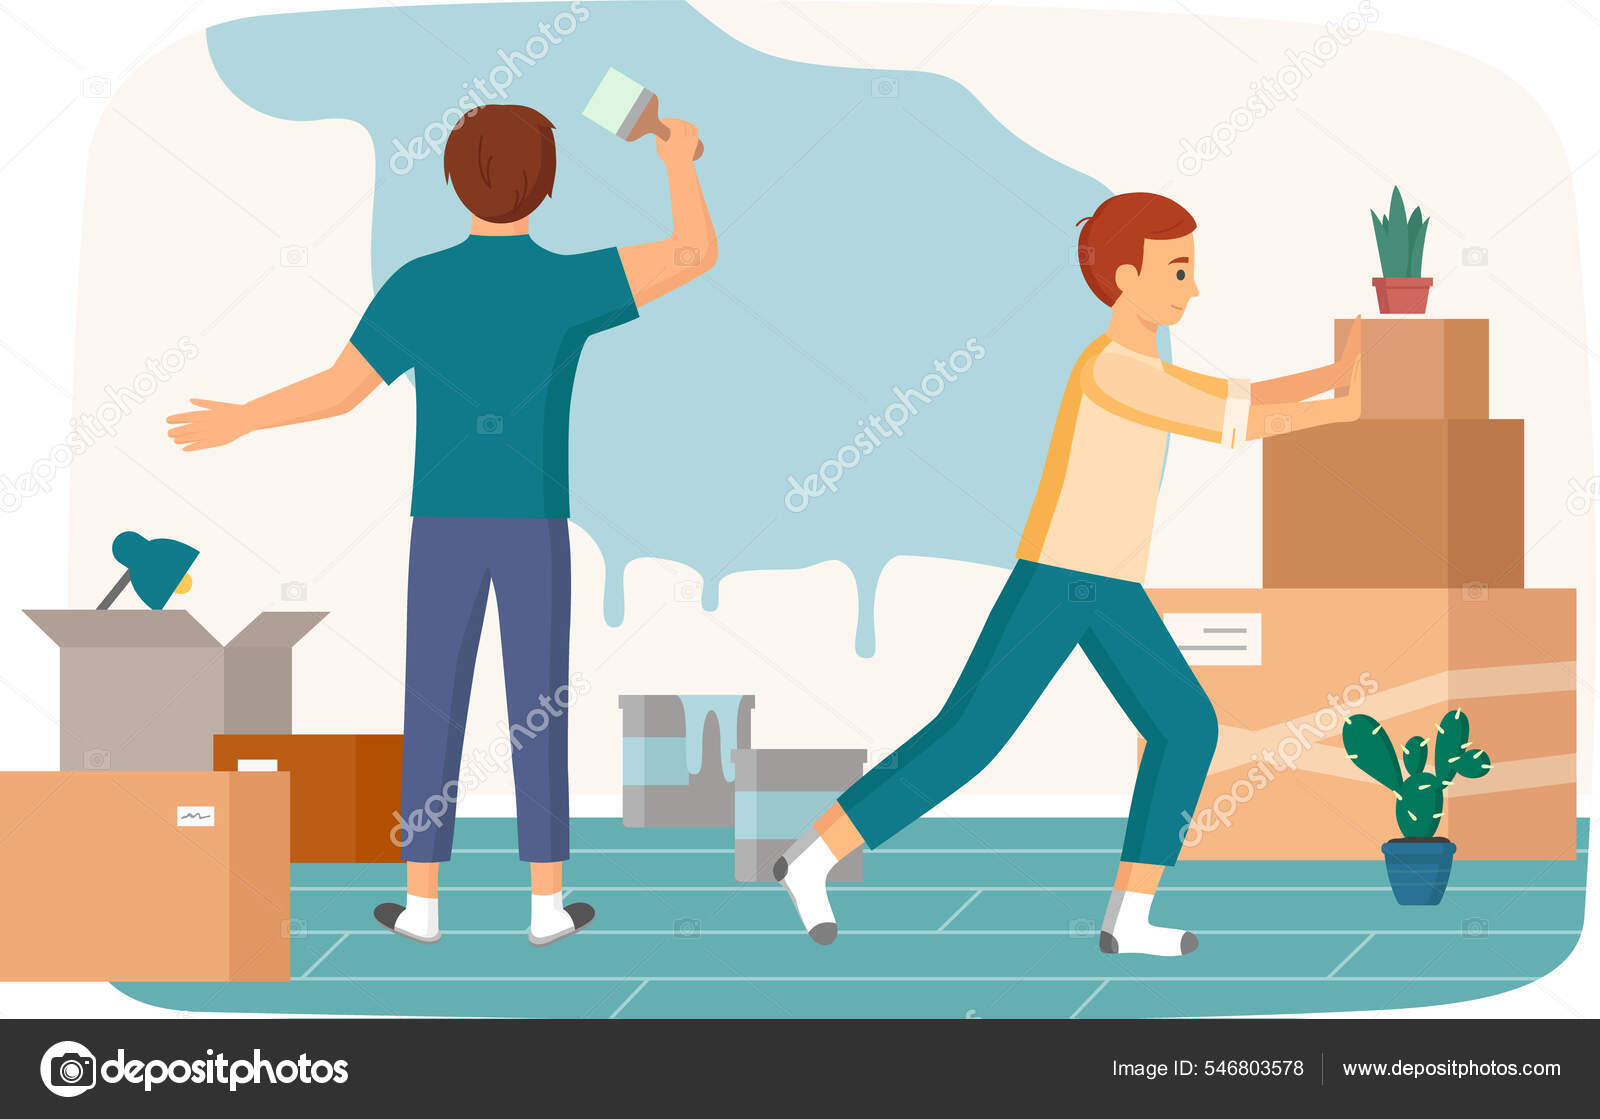 https://st.depositphotos.com/38874124/54680/v/1600/depositphotos_546803578-stock-illustration-family-moving-to-new-house.jpg